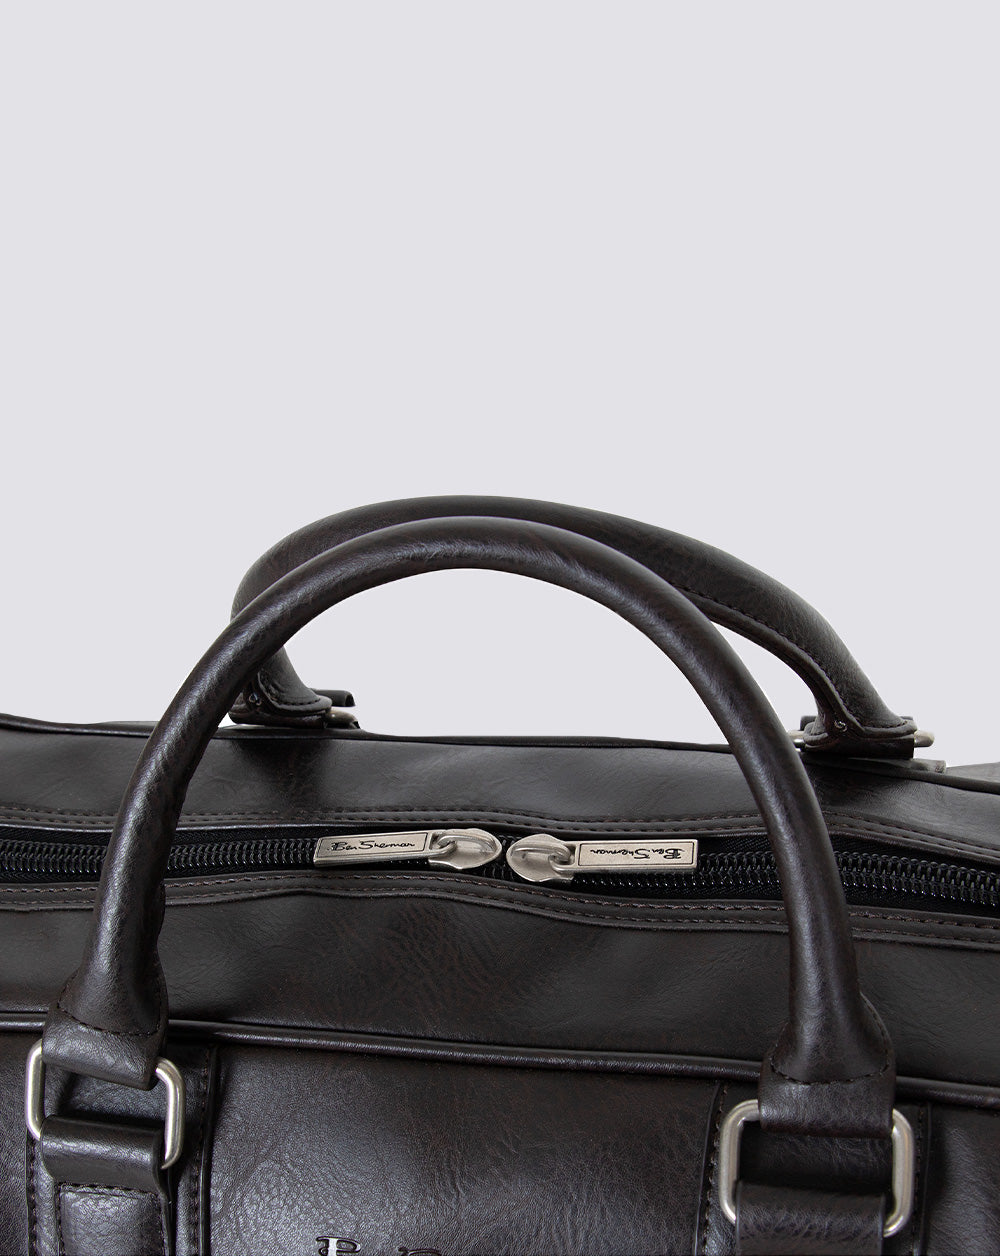 Benjamin Leather Duffle Bag